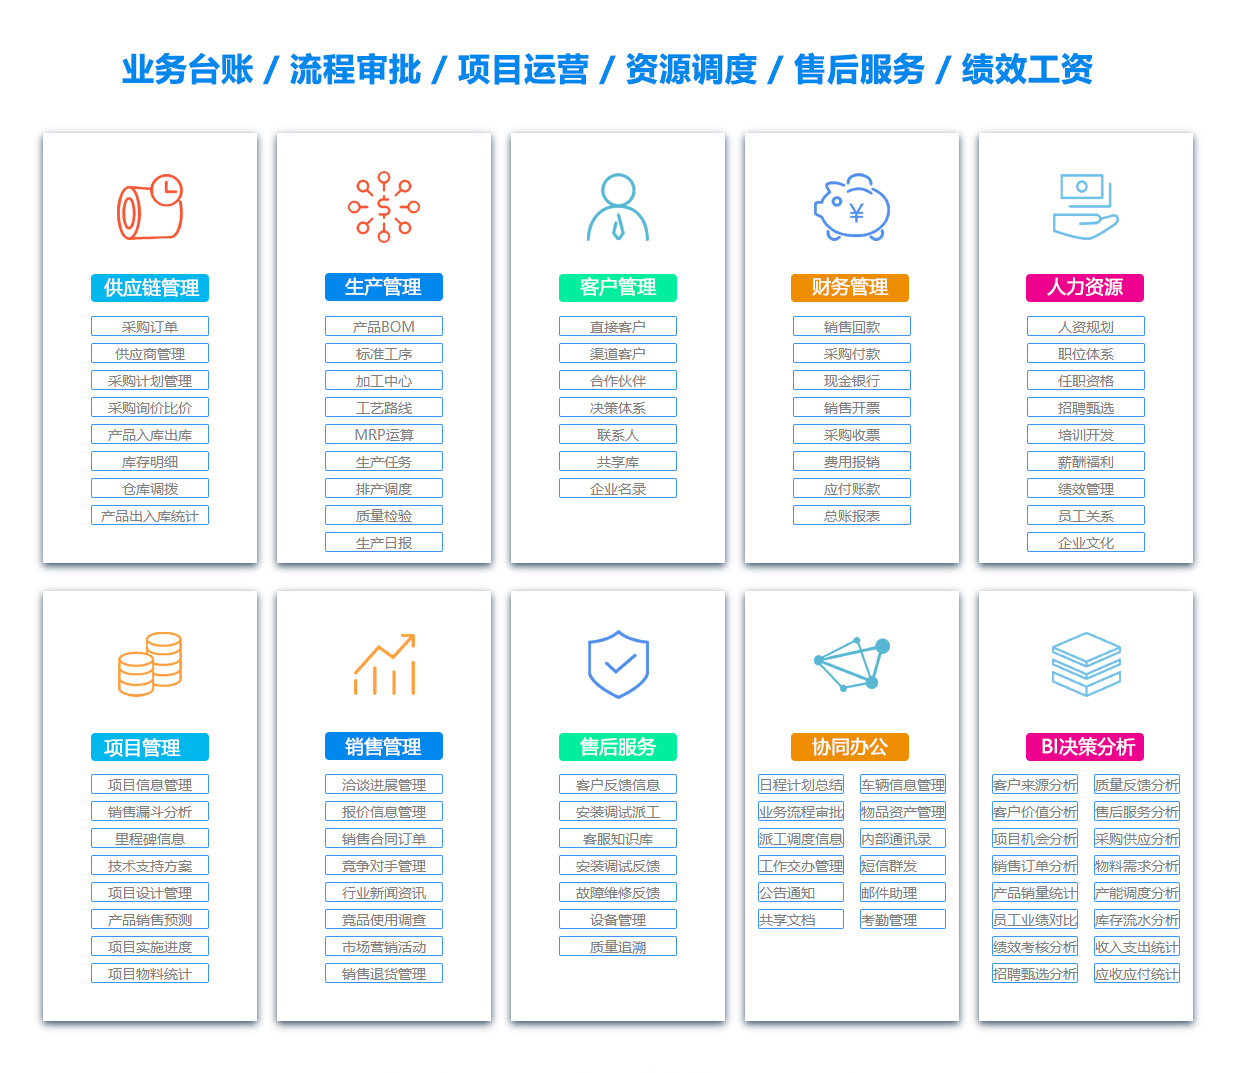 安庆BI:商业智能软件